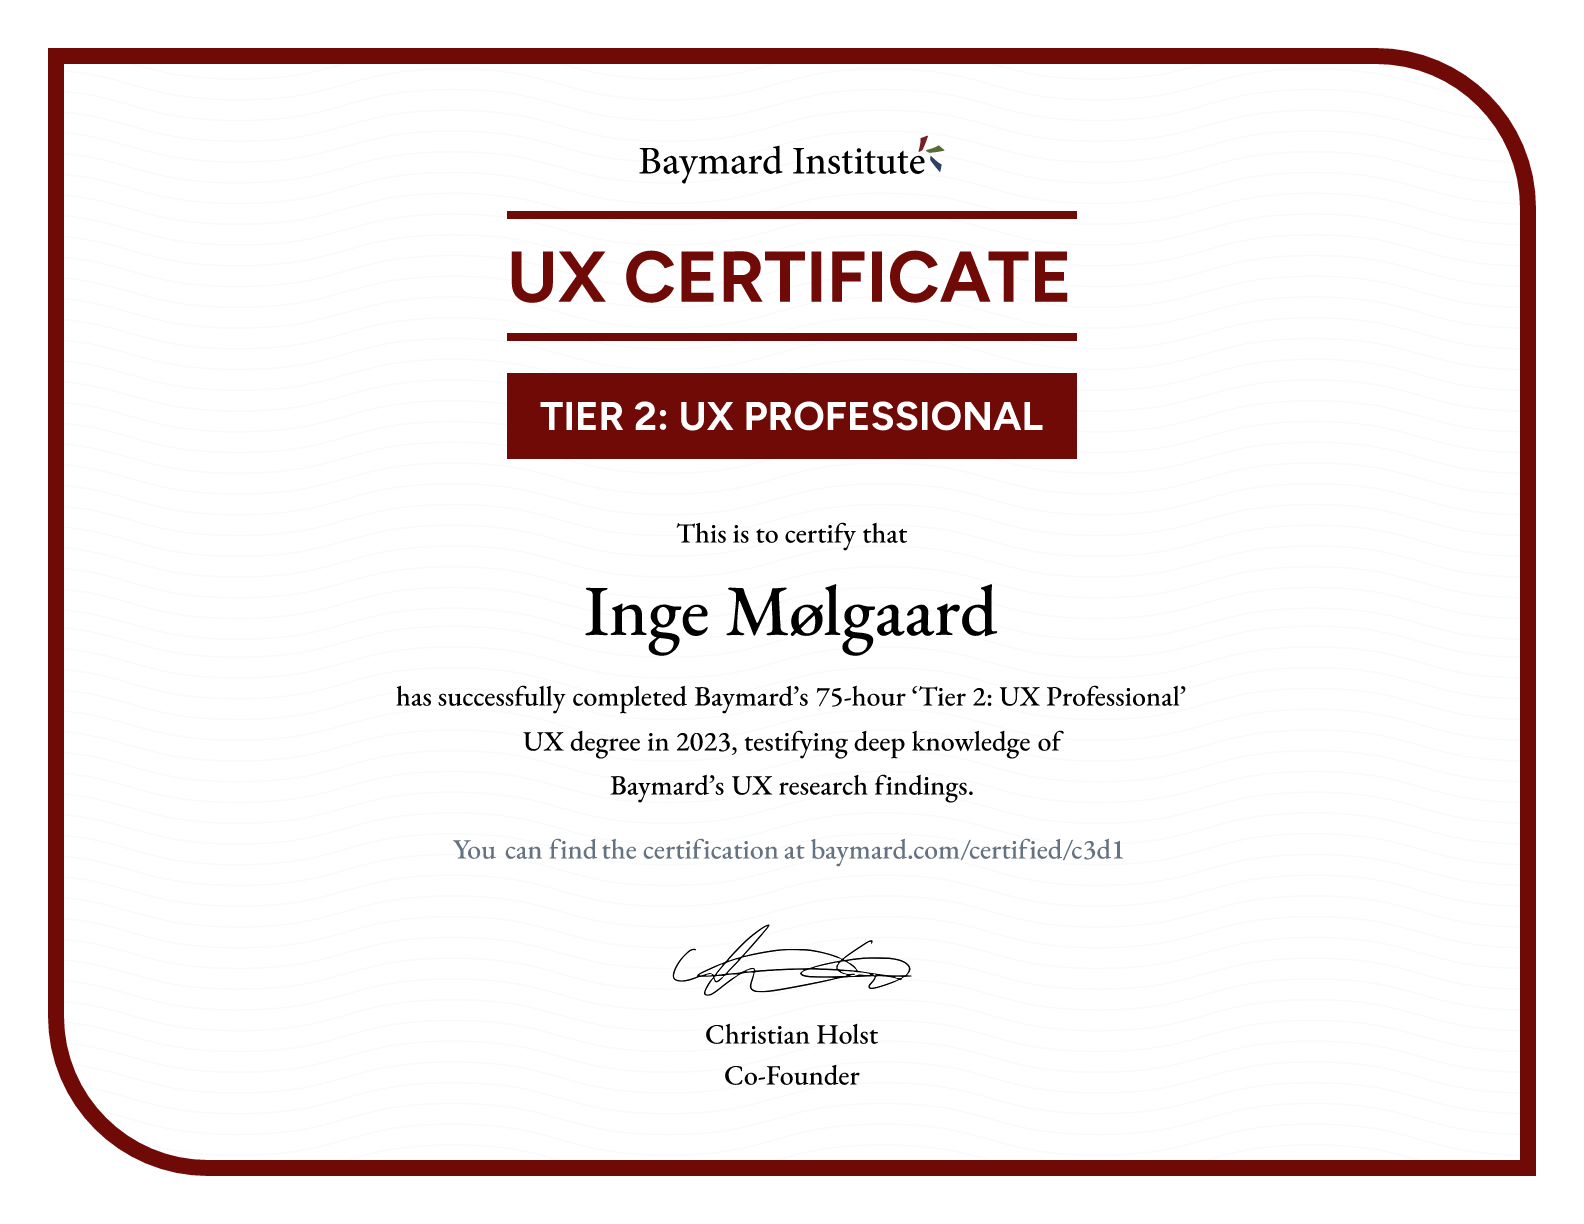 Inge Mølgaard’s certificate